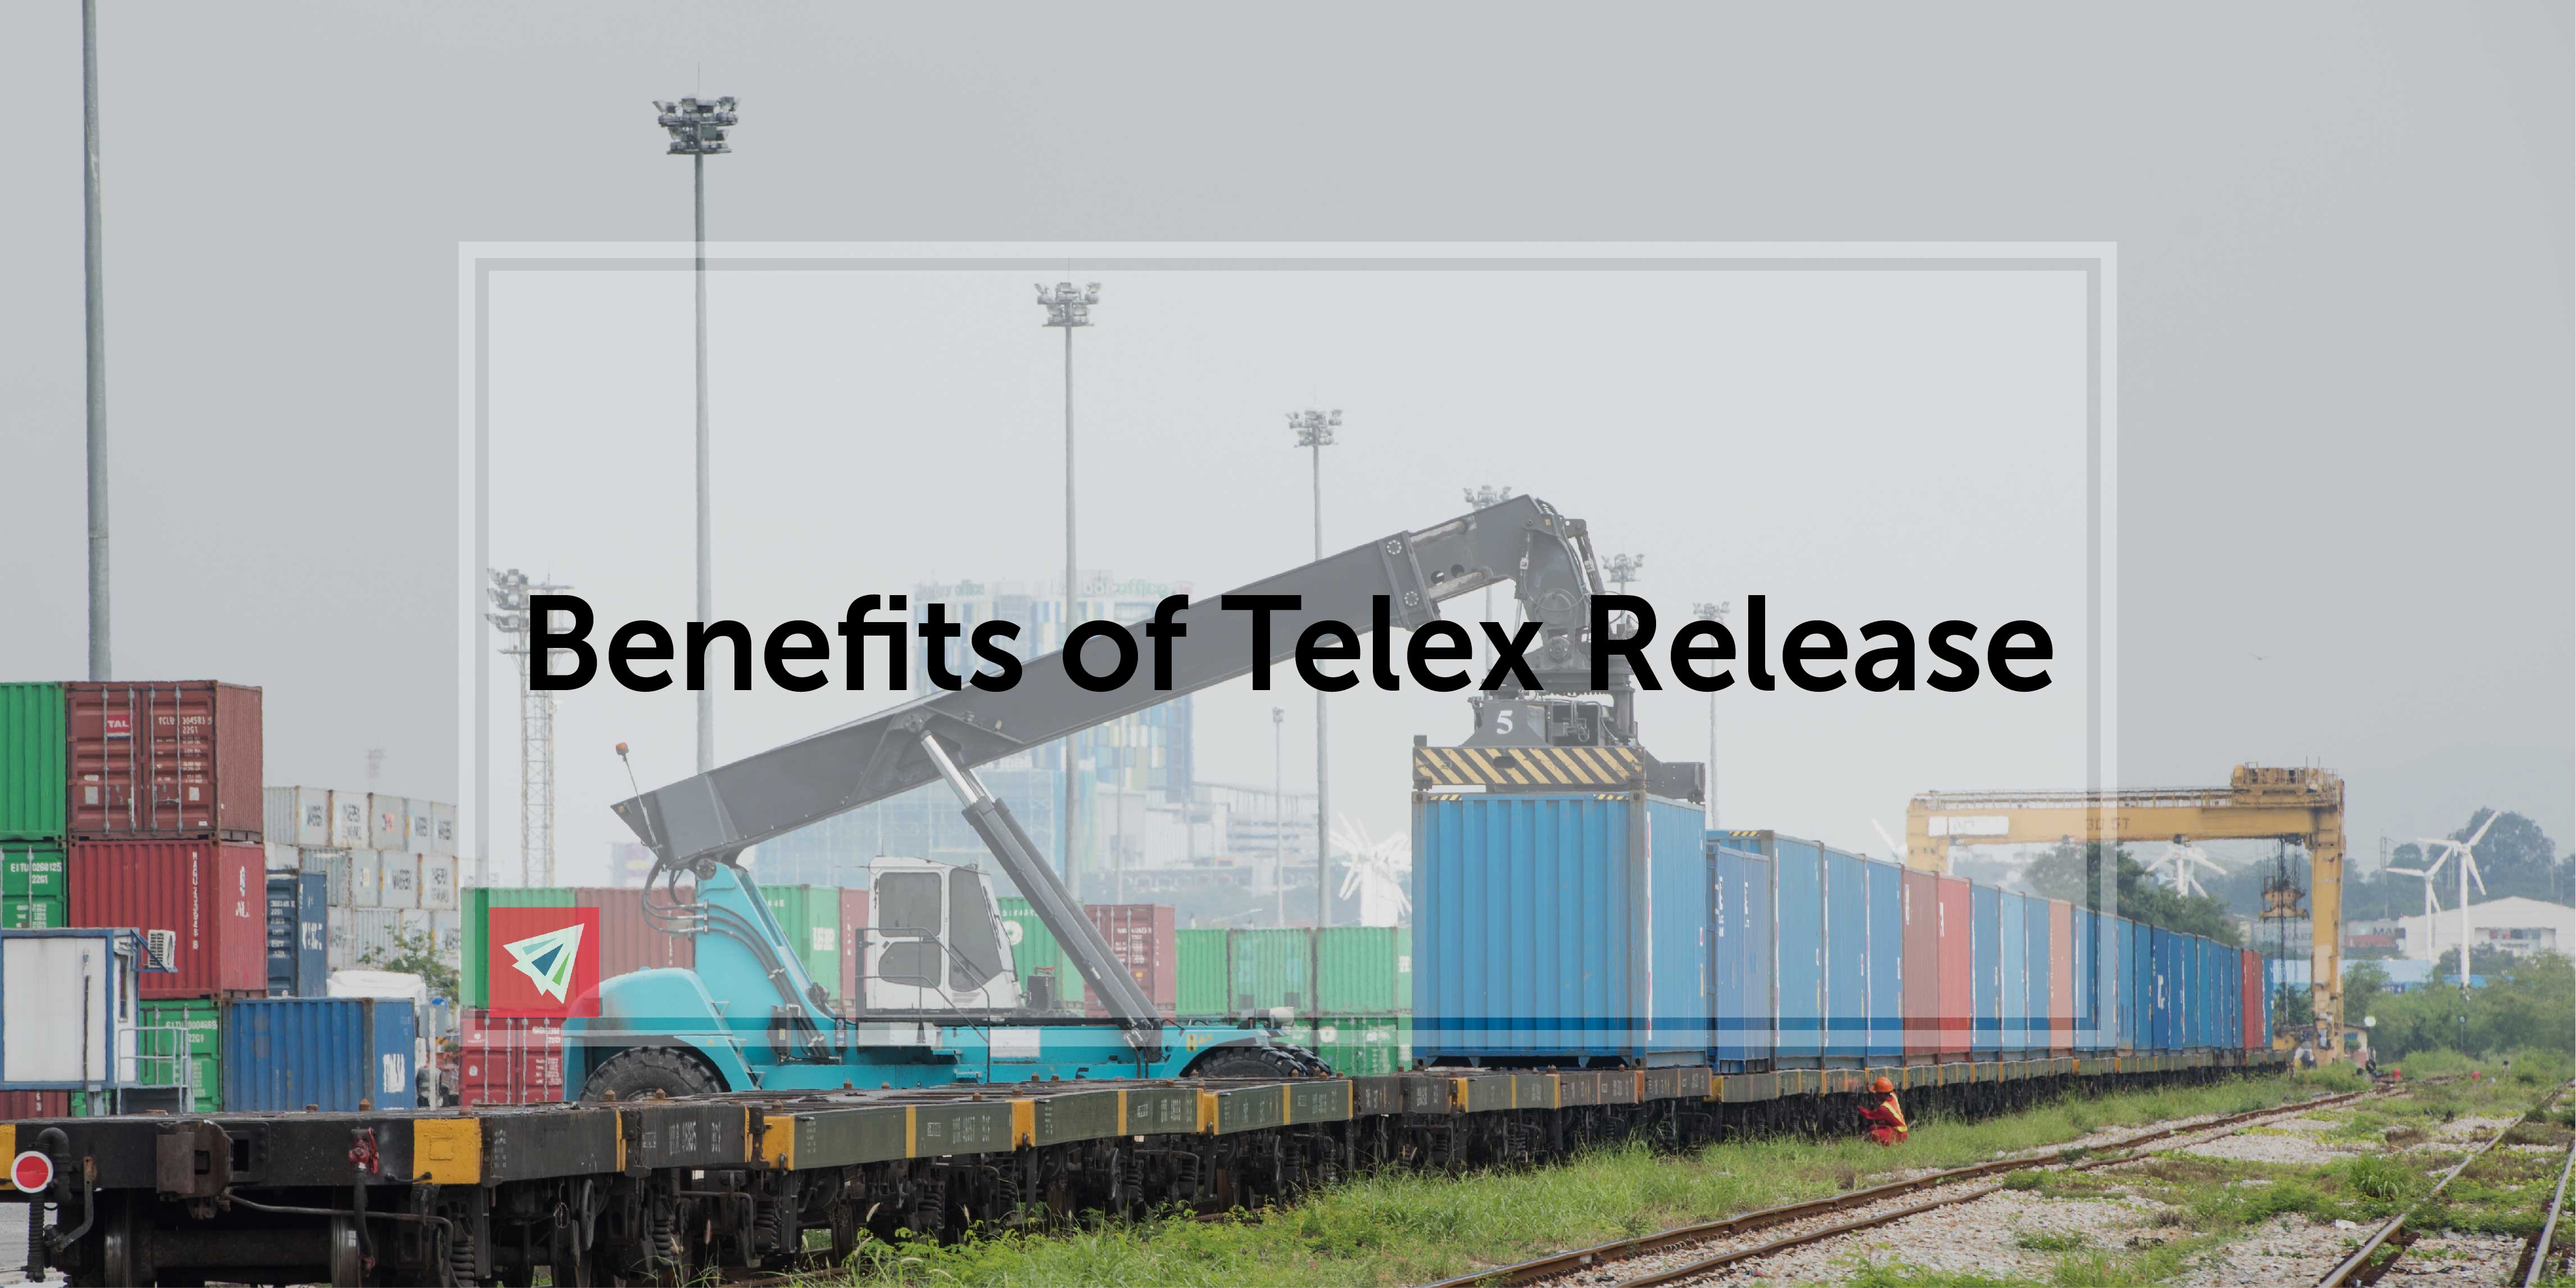 Benefits of Telex Release